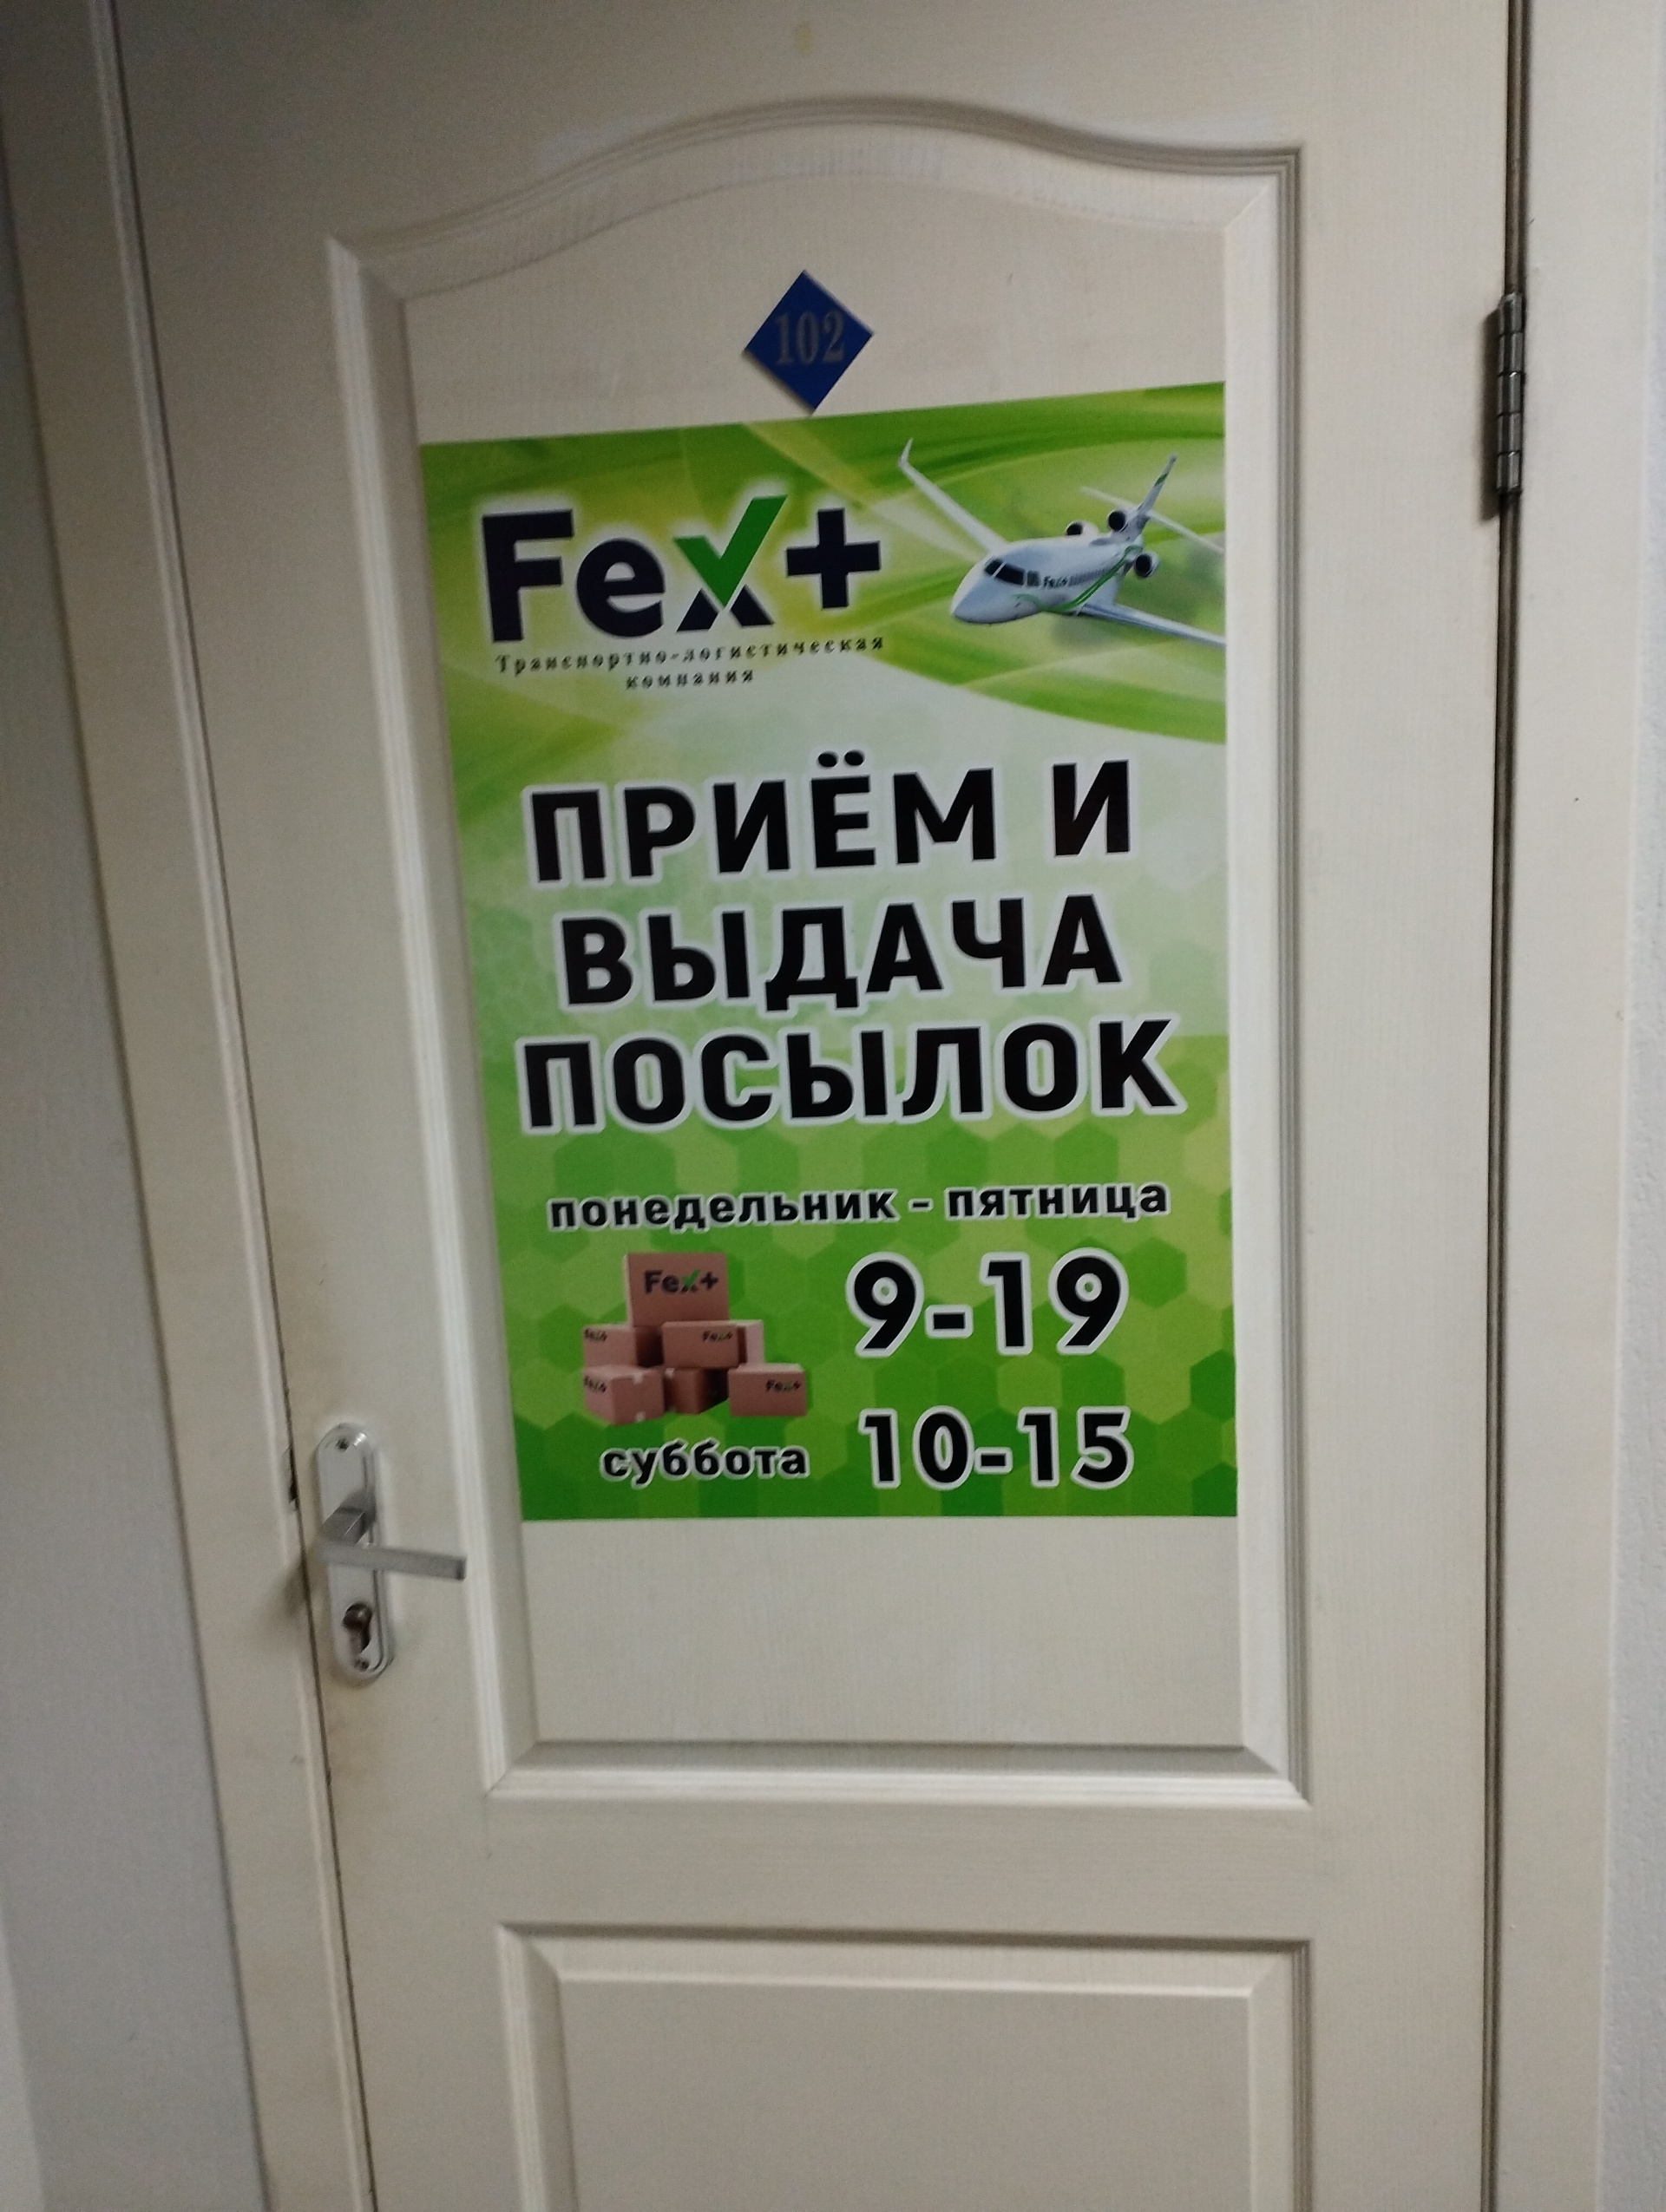 Fex+, транспортно-логистическая компания, Альфа Сити, Шестакова, 6, Кемерово  — 2ГИС